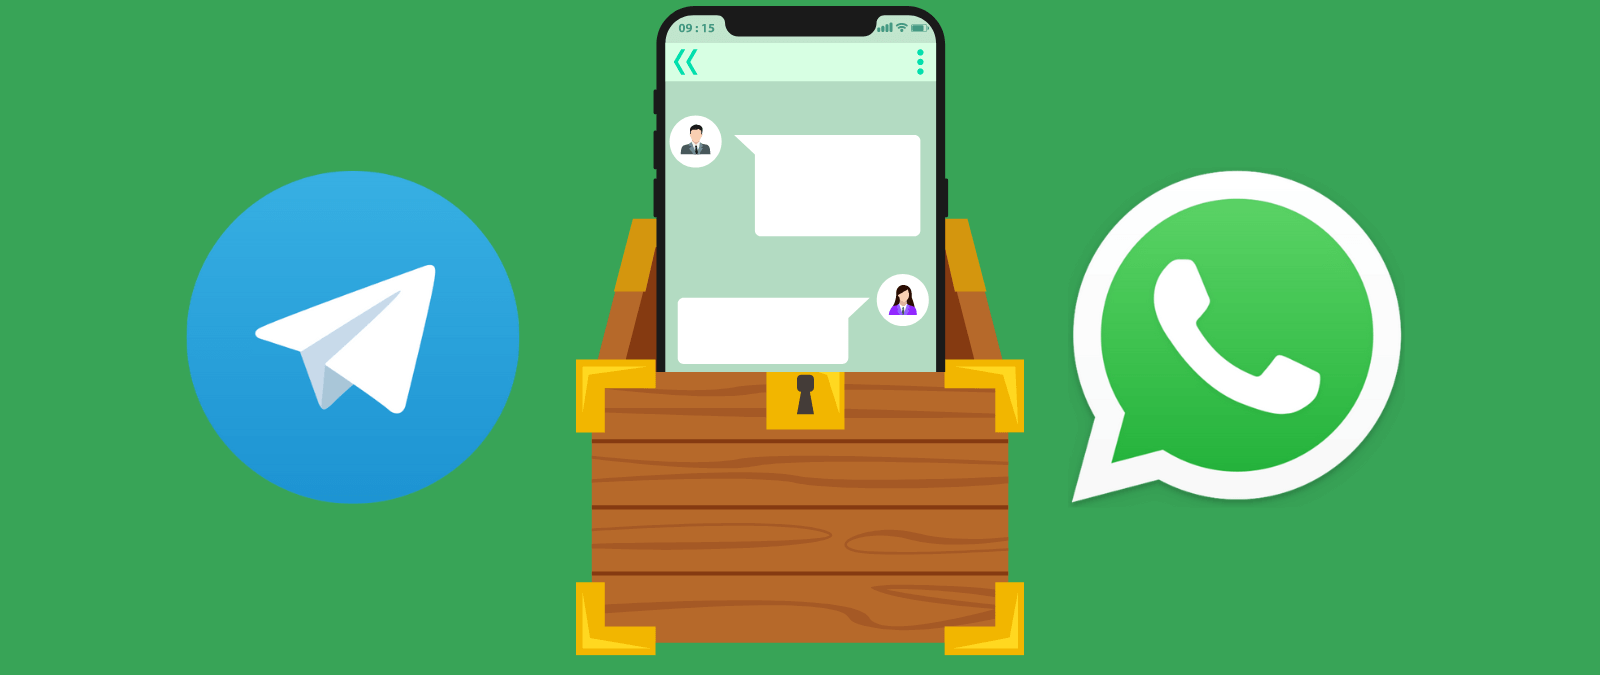 Cómo descargar y guardar nuestras conversaciones y archivos de Telegram y WhatsApp